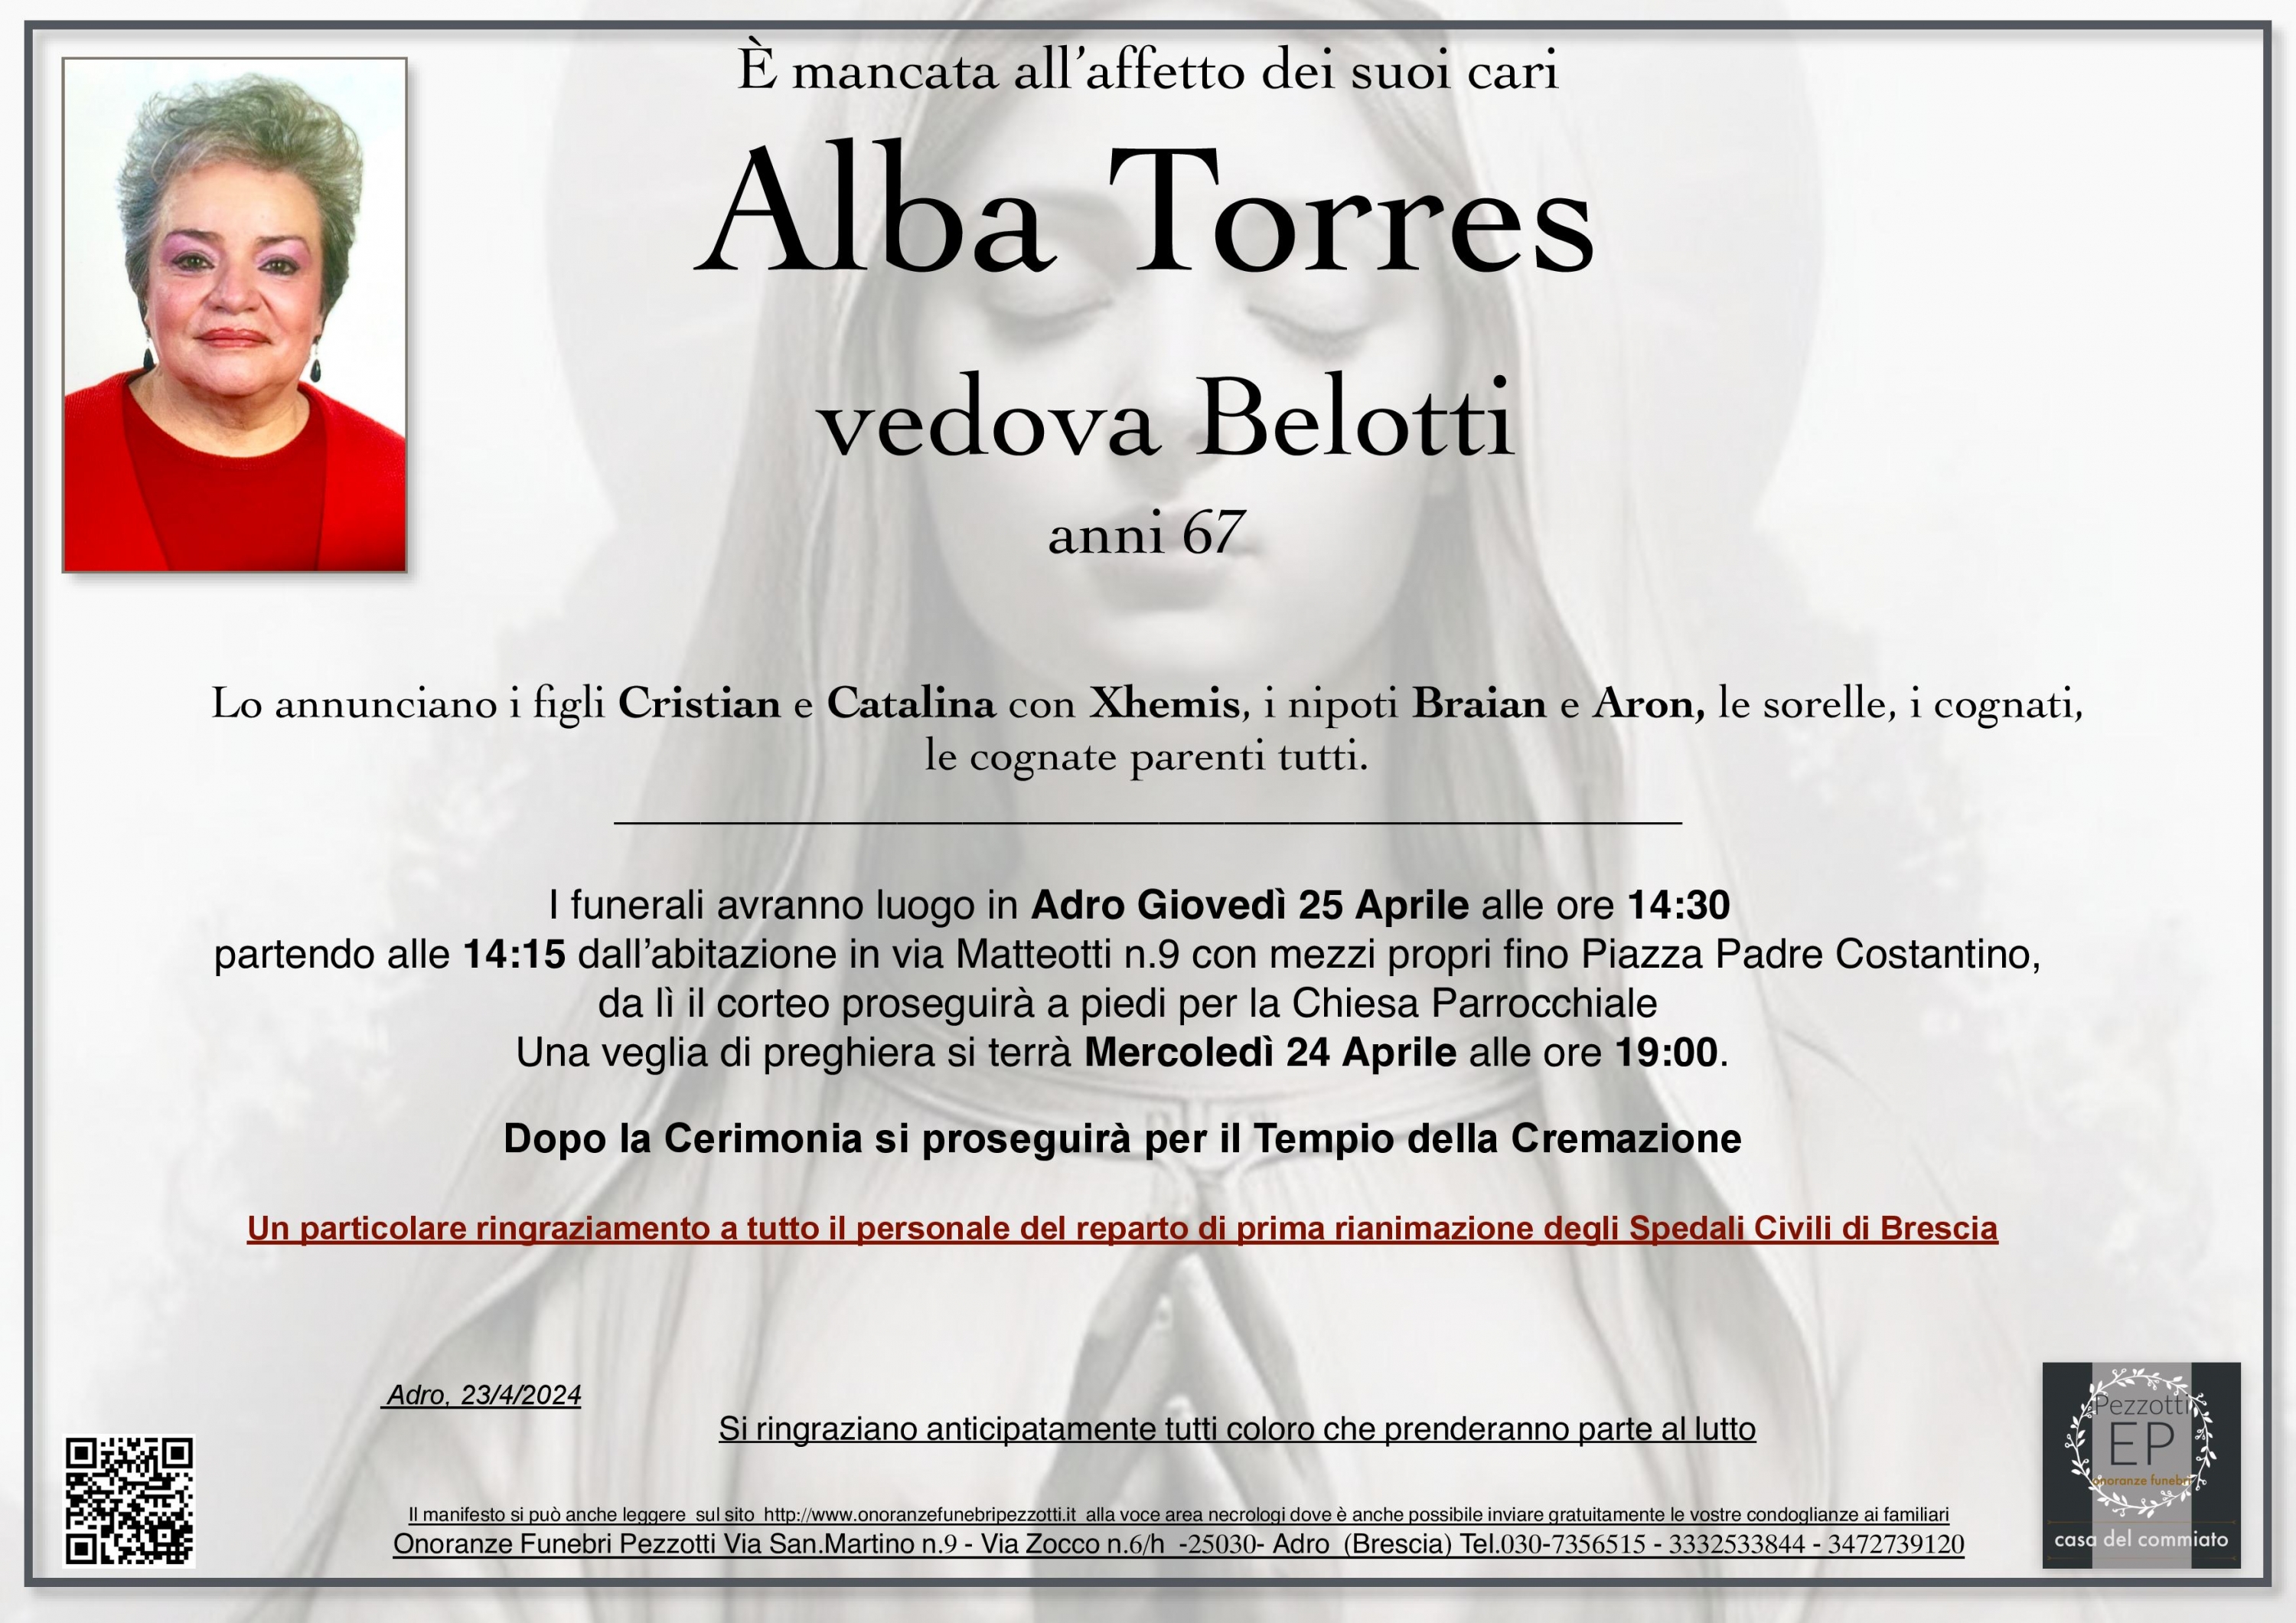 Alba Torres ved. Belotti